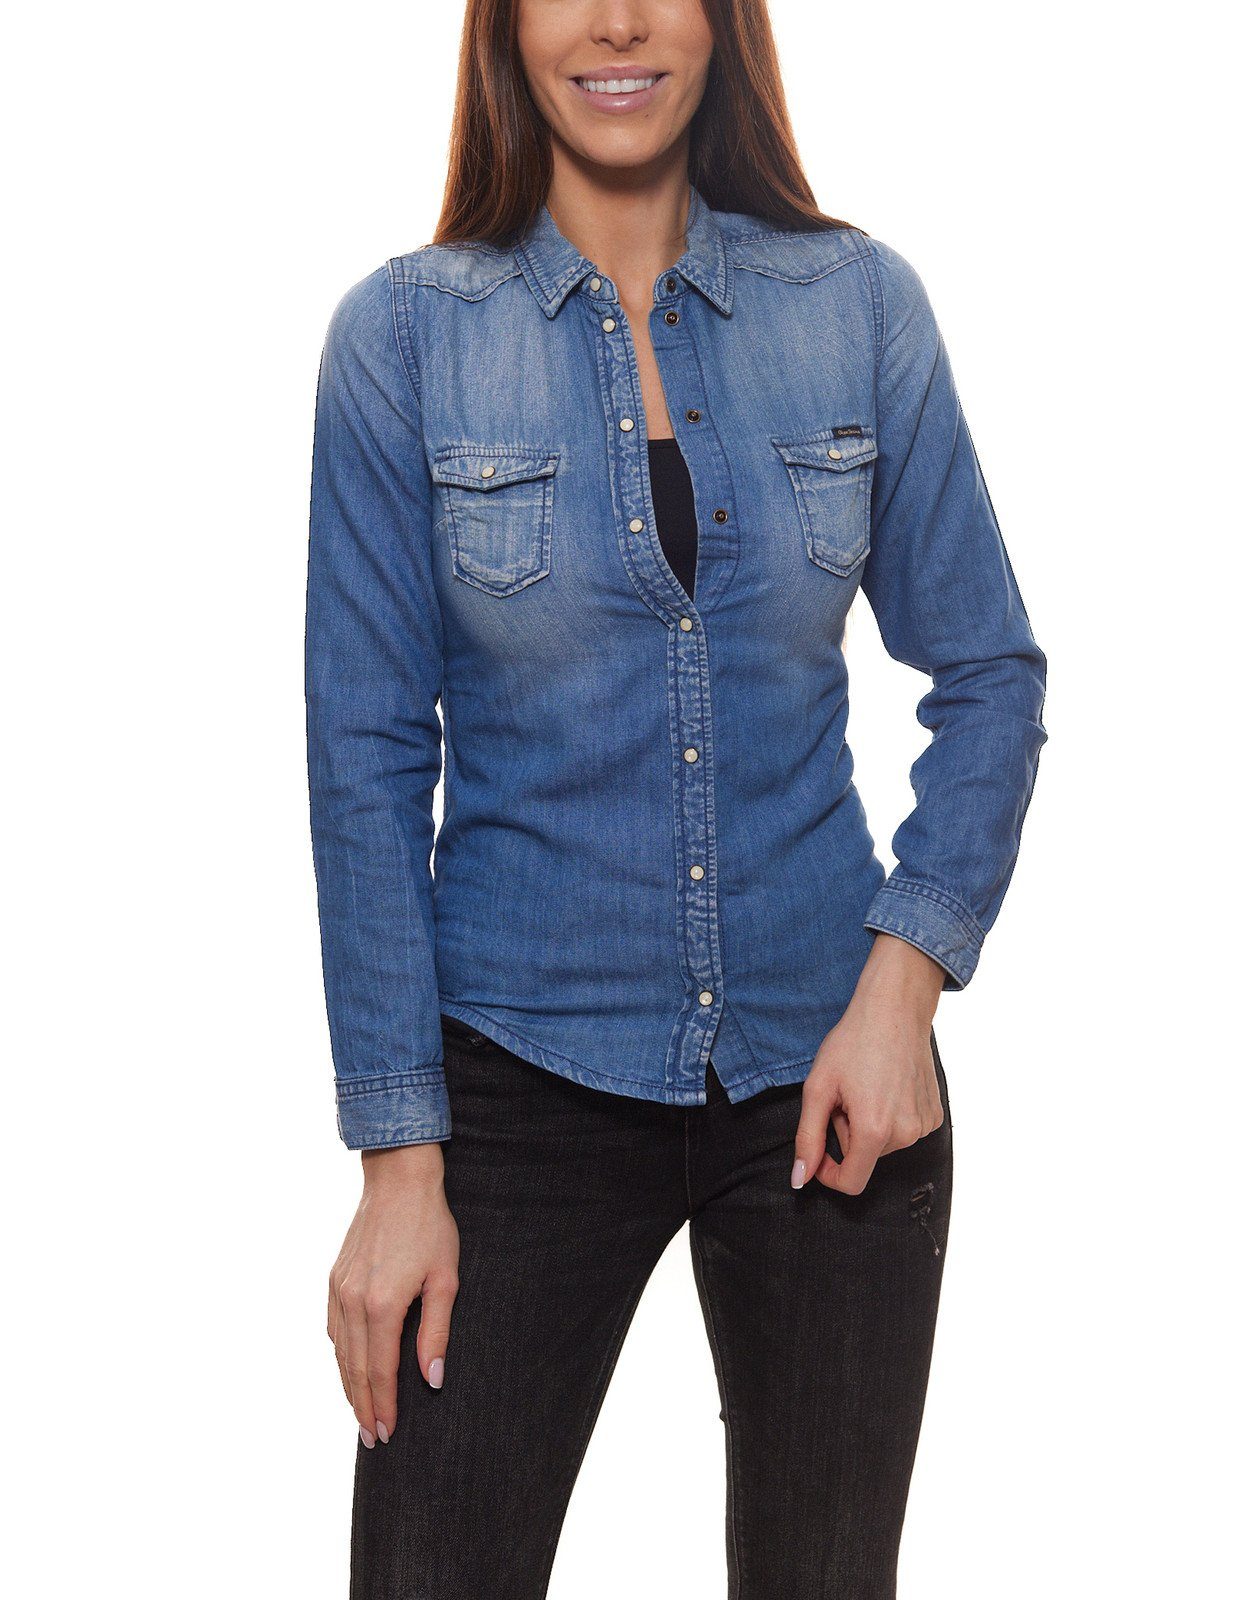 Pepe Jeans Hemdbluse »Pepe Jeans Rosetta Hemd-Bluse schönes Damen Jeans-Hemd  Freizeit-Bluse mit Brusttaschen Slim Fit Blau« online kaufen | OTTO